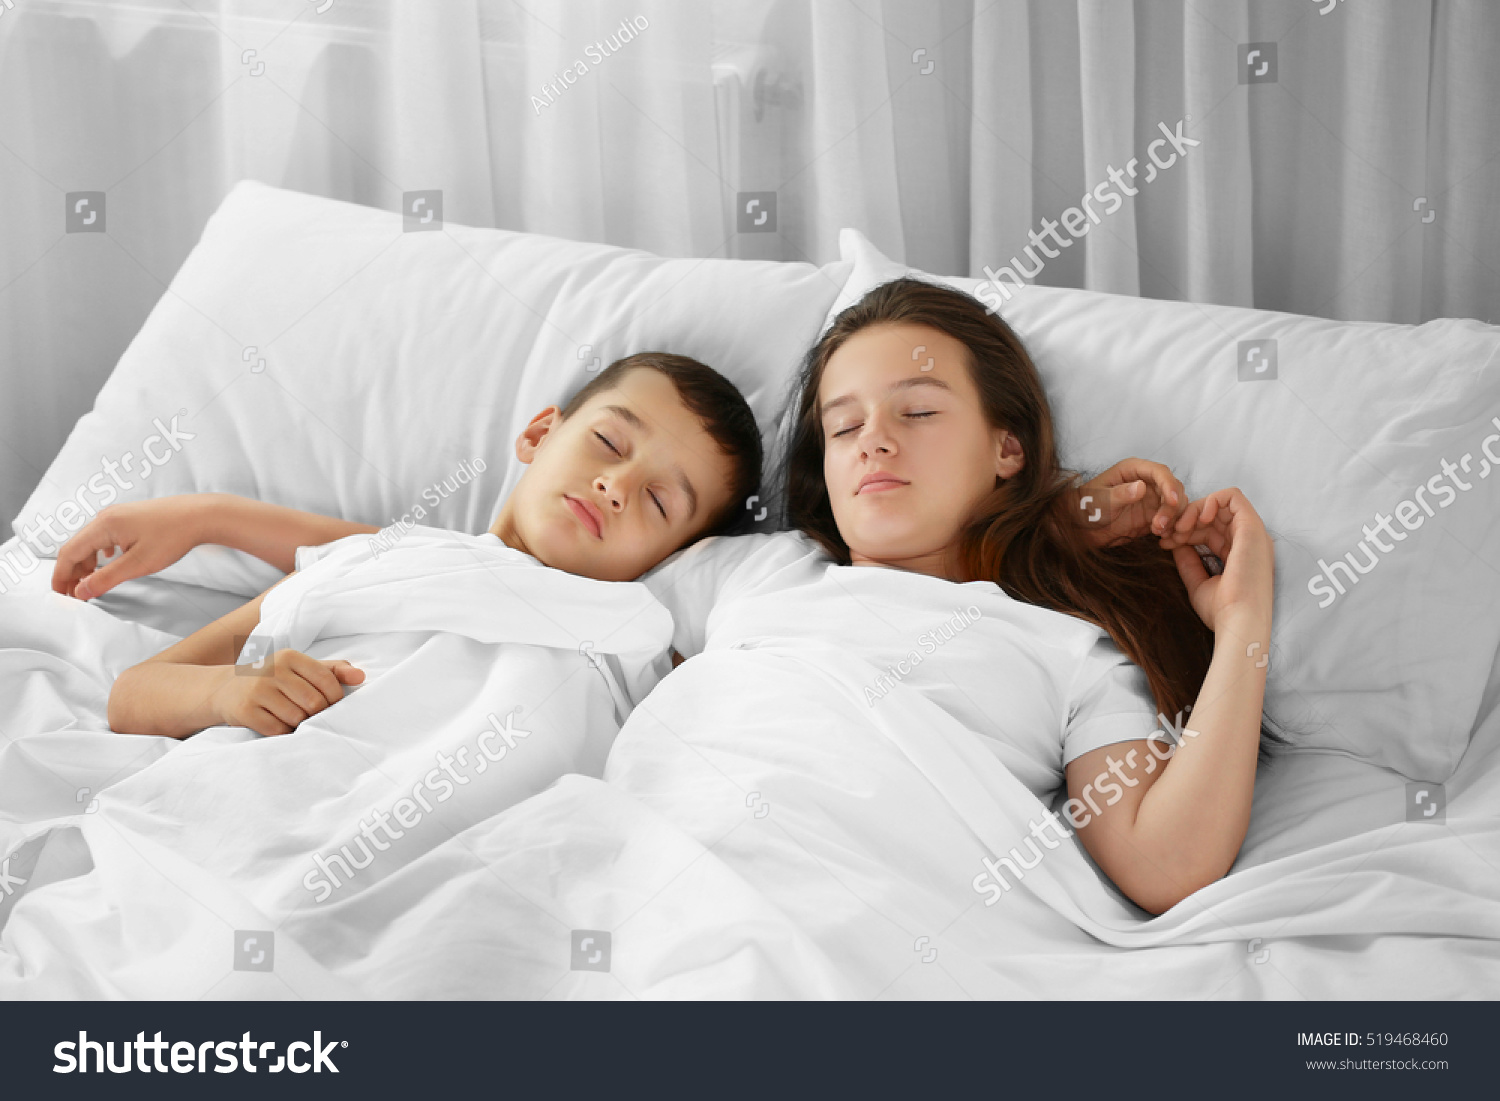 сплю с сестрой на одной кровати